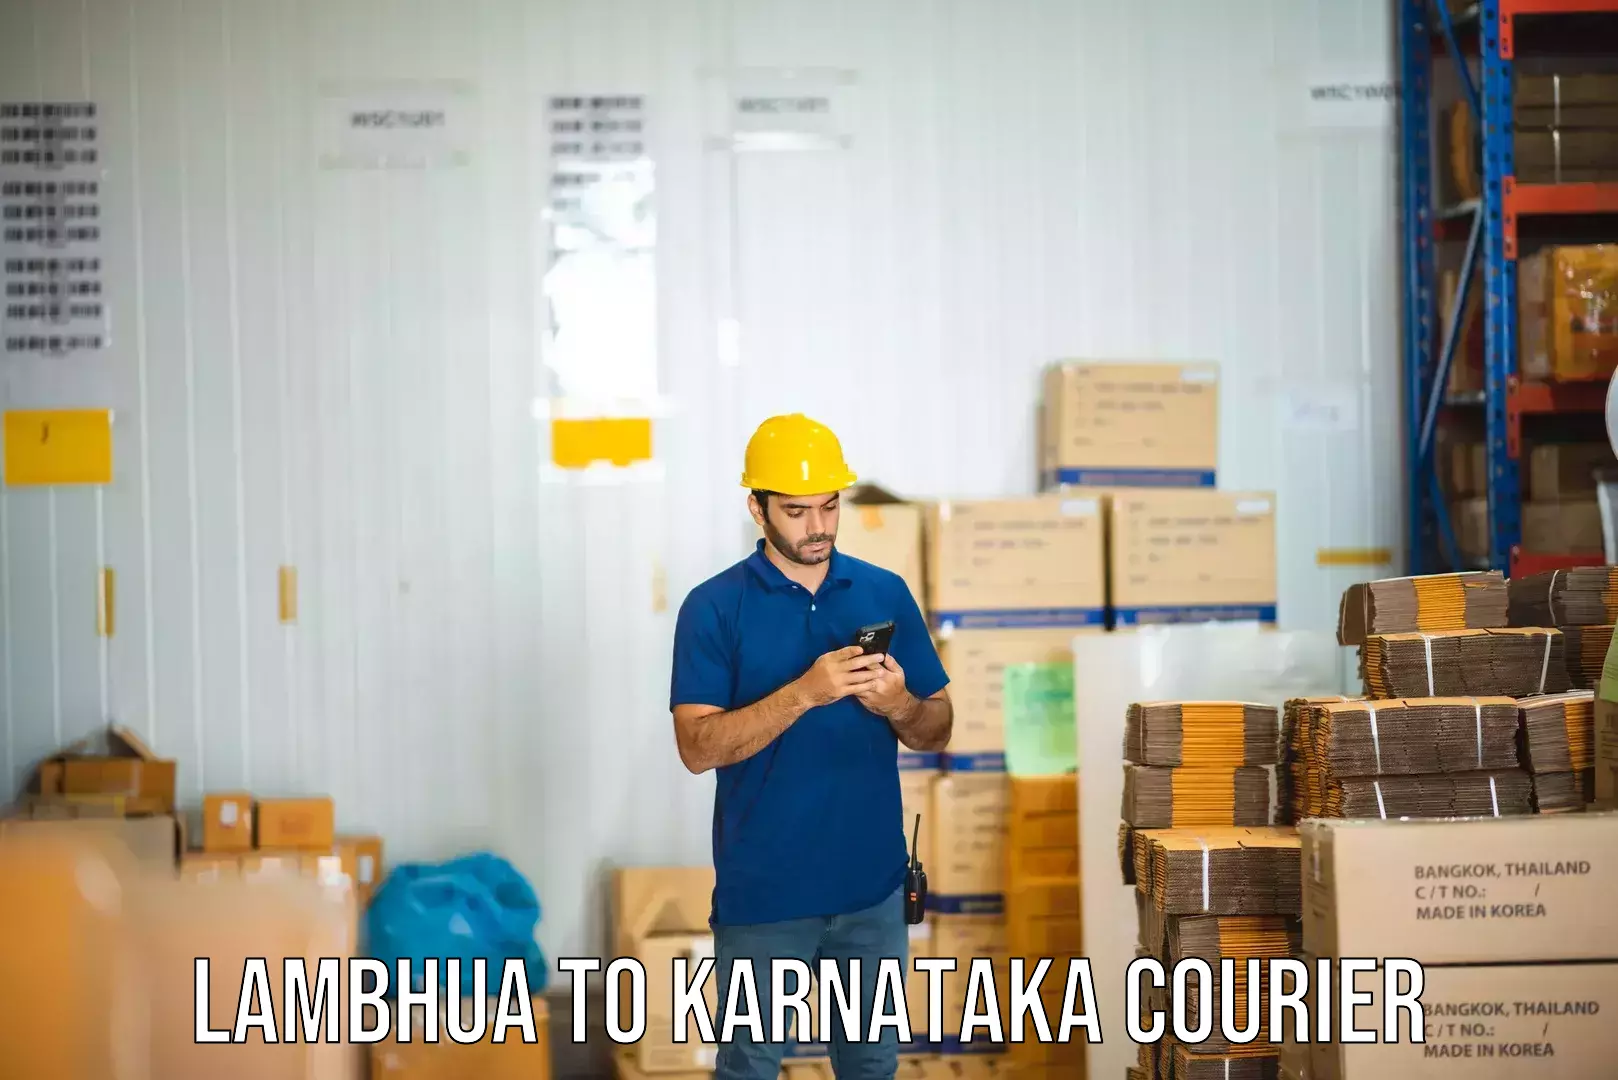 Professional courier handling Lambhua to Karnataka